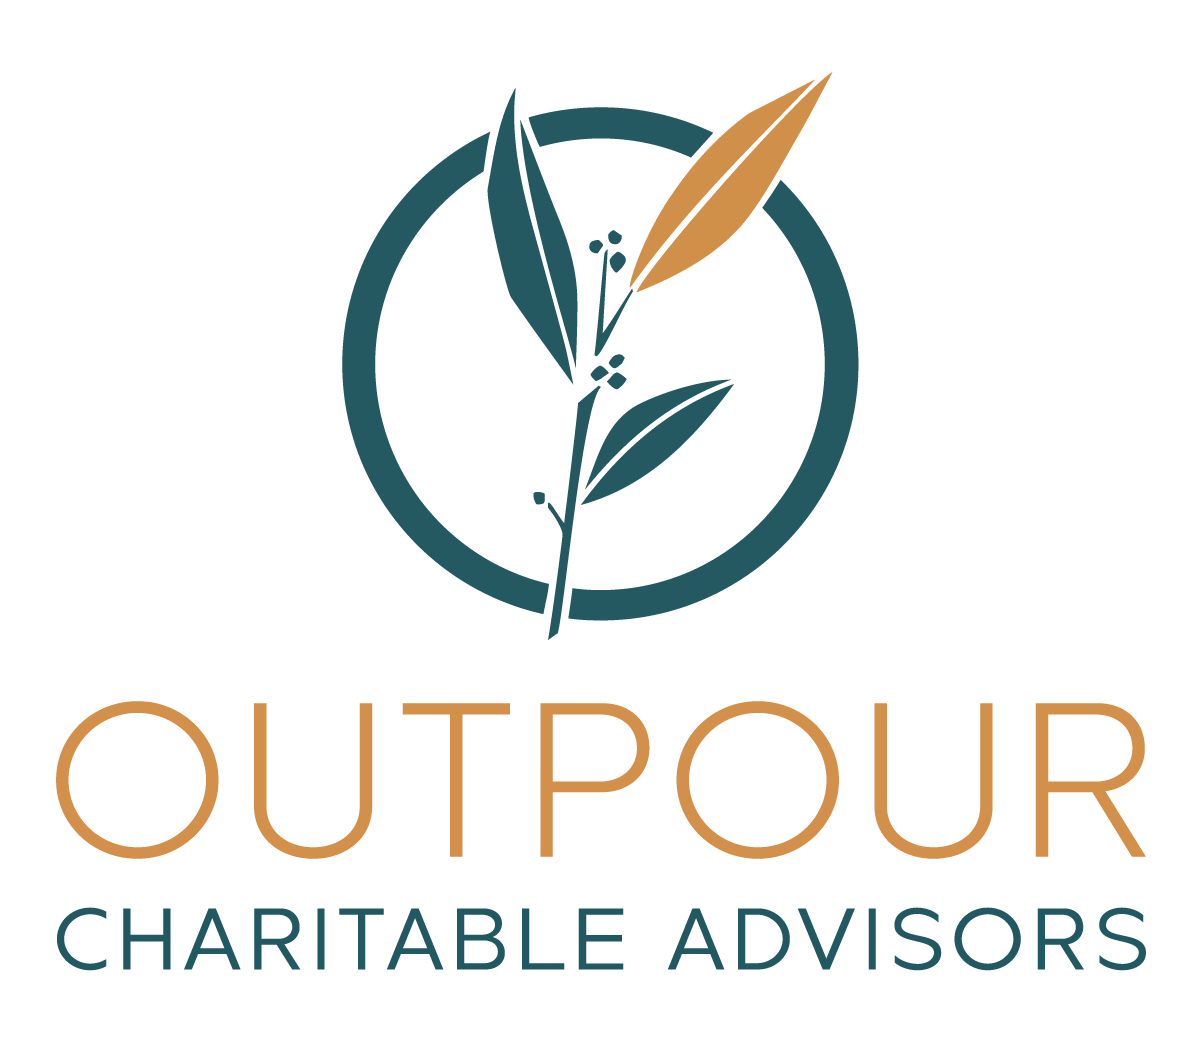 Outpour Charitable Advisors